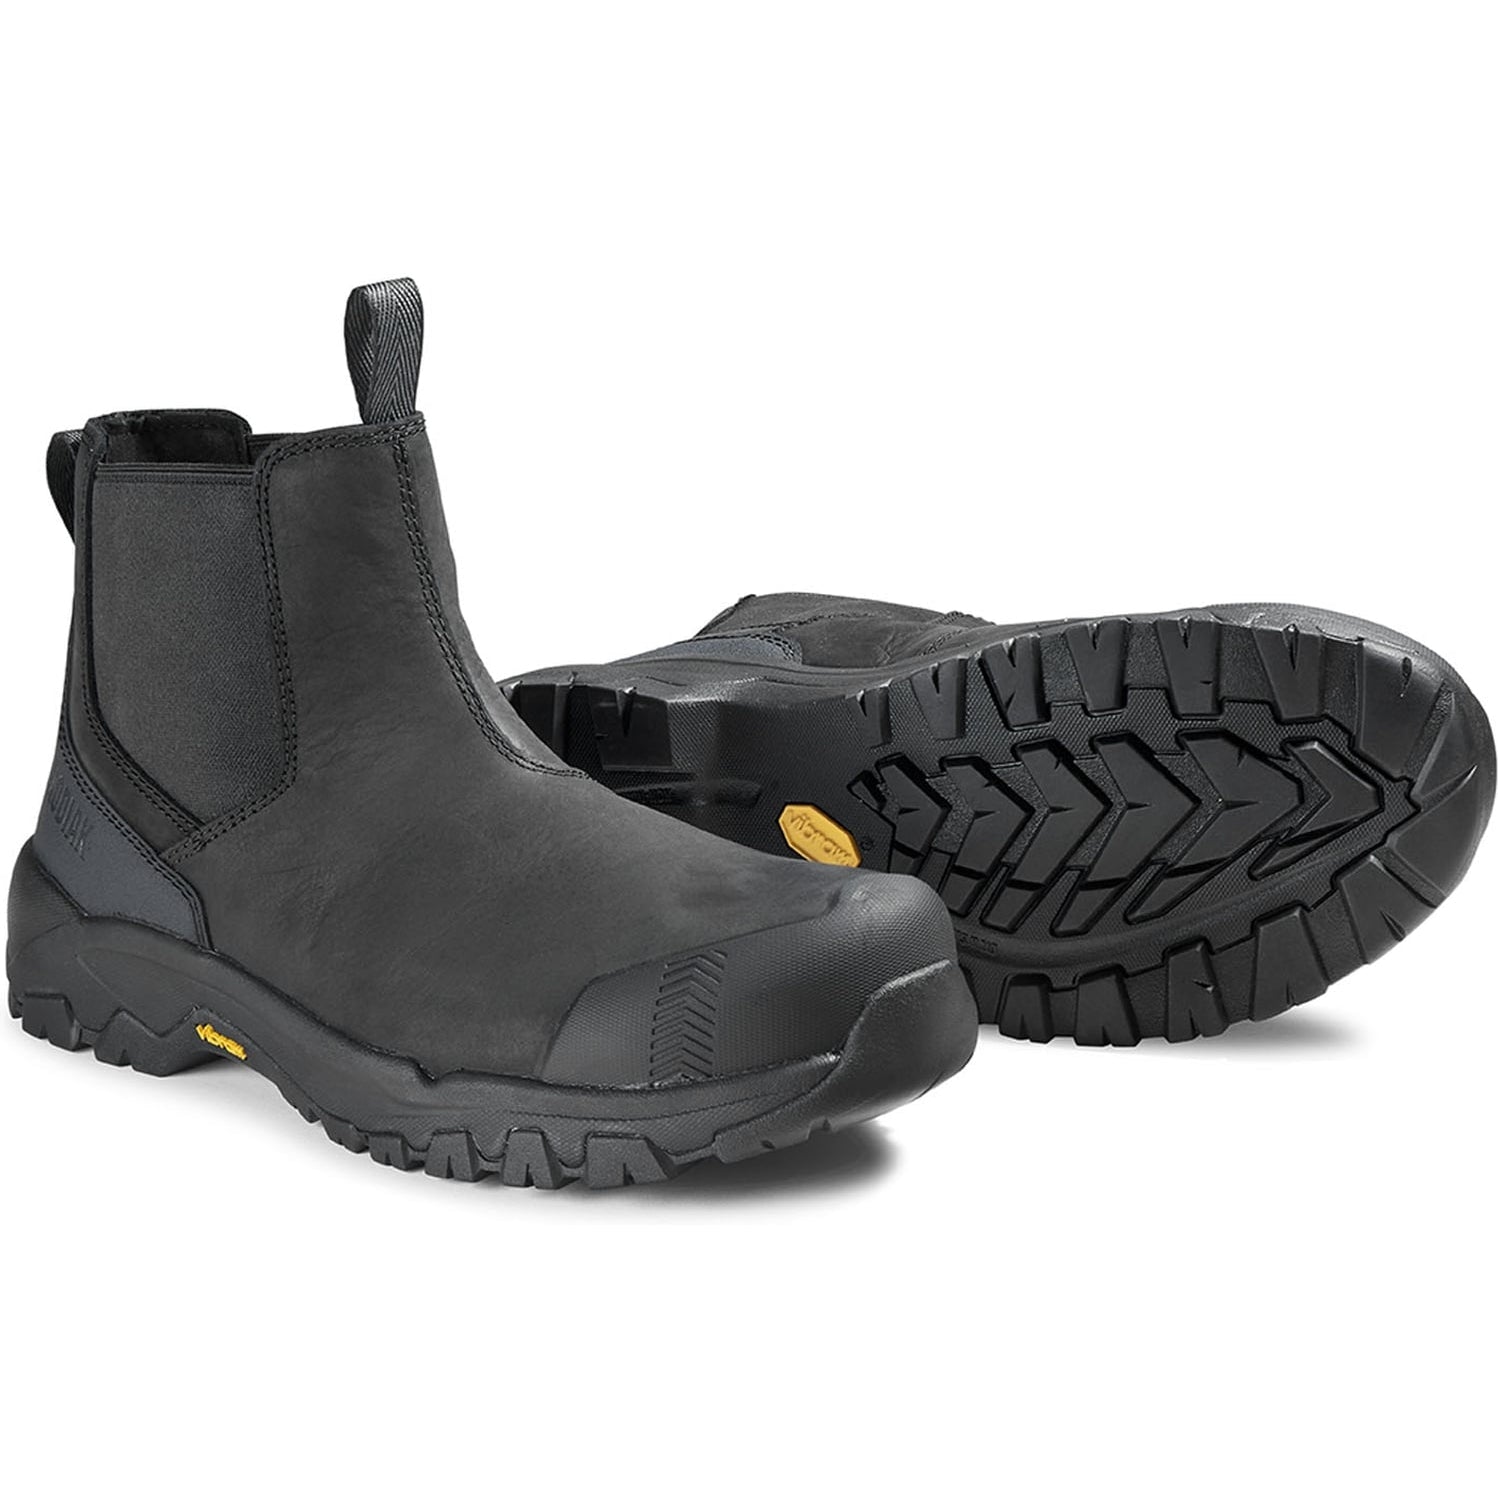 Kodiak Men's Quest Bound Comp Toe WP Chelsea Work Boot -Black- 4THNBK  - Overlook Boots